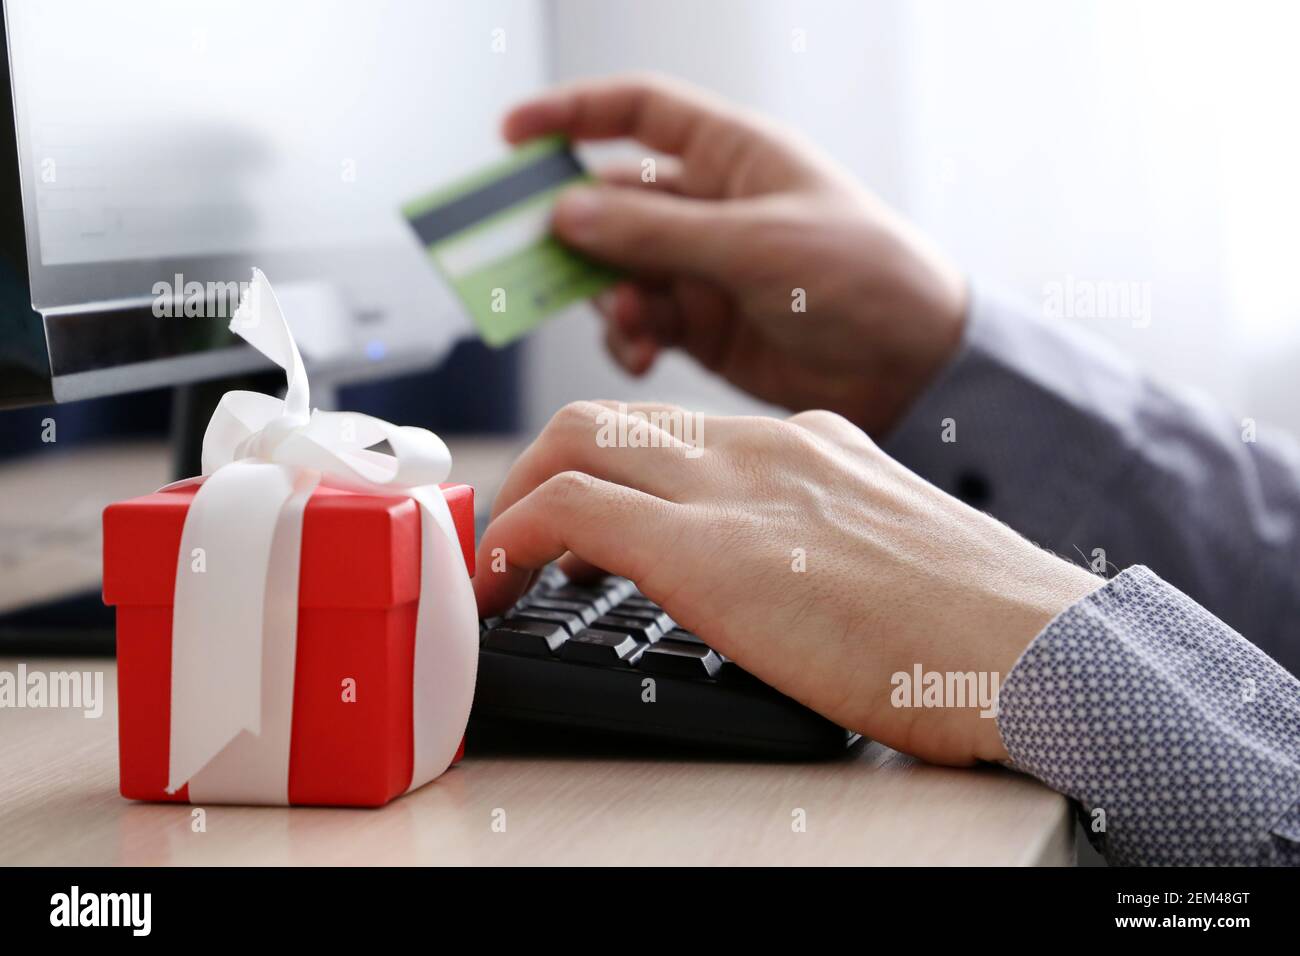 Uomo con carta di credito seduta sullo sfondo della tastiera del PC e scatola regalo rossa. Concetto di acquisto di un regalo, shopping online e pagamento Foto Stock